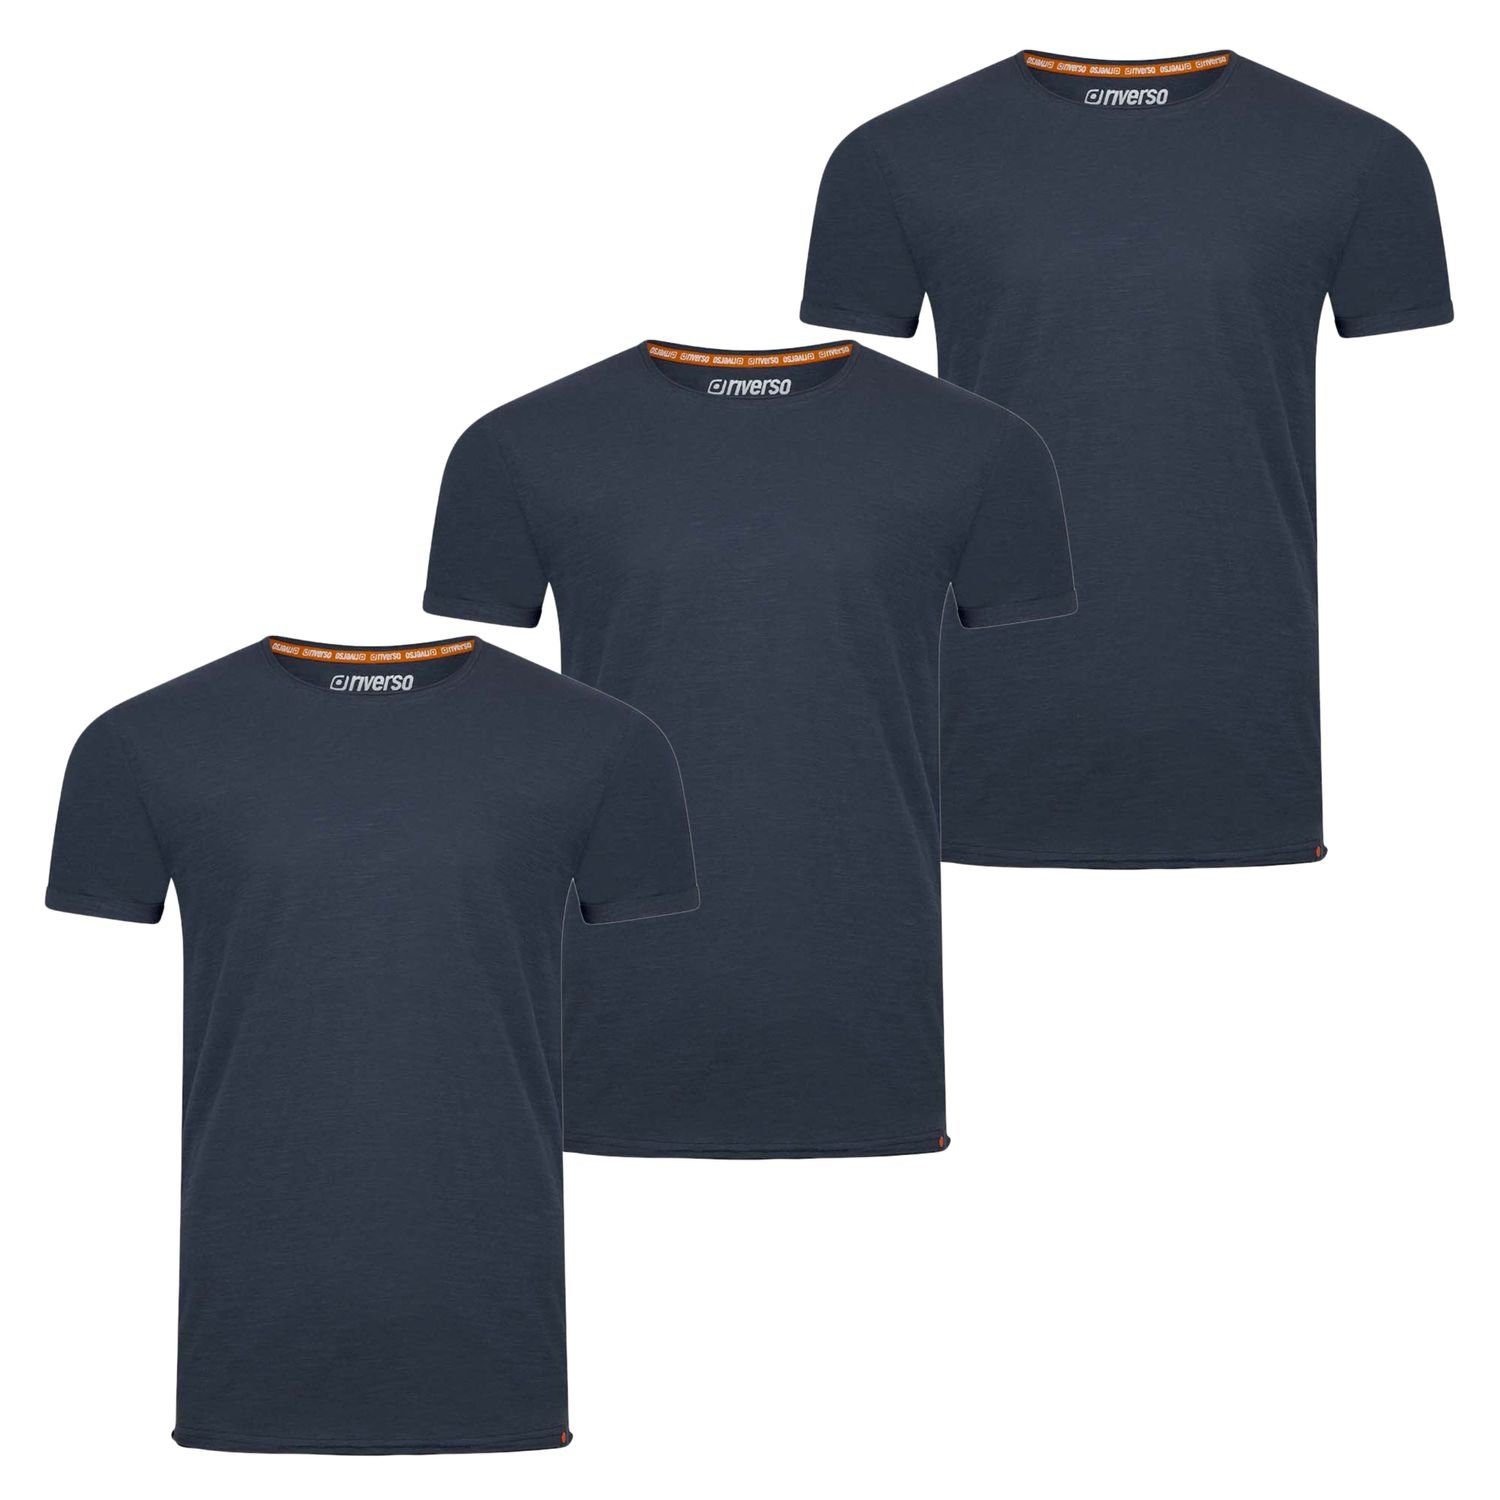 riverso T-Shirt Herren Basic Shirt RIVLenny Regular Fit (3-tlg) Kurzarm Tee Shirt mit Rundhalsausschnitt aus 100% Baumwolle Navy